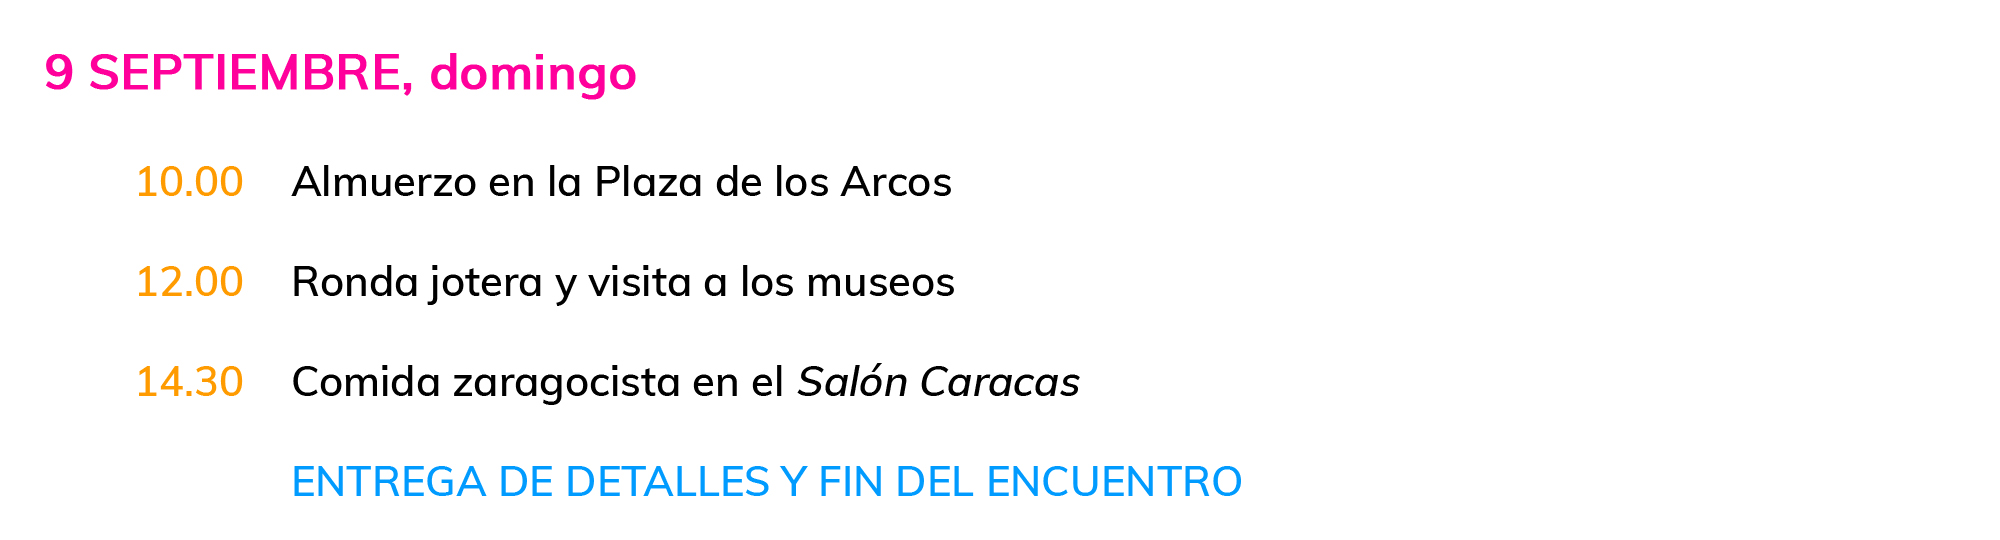 Preliminares de Fiestas Mayores 2018 en Alcorisa